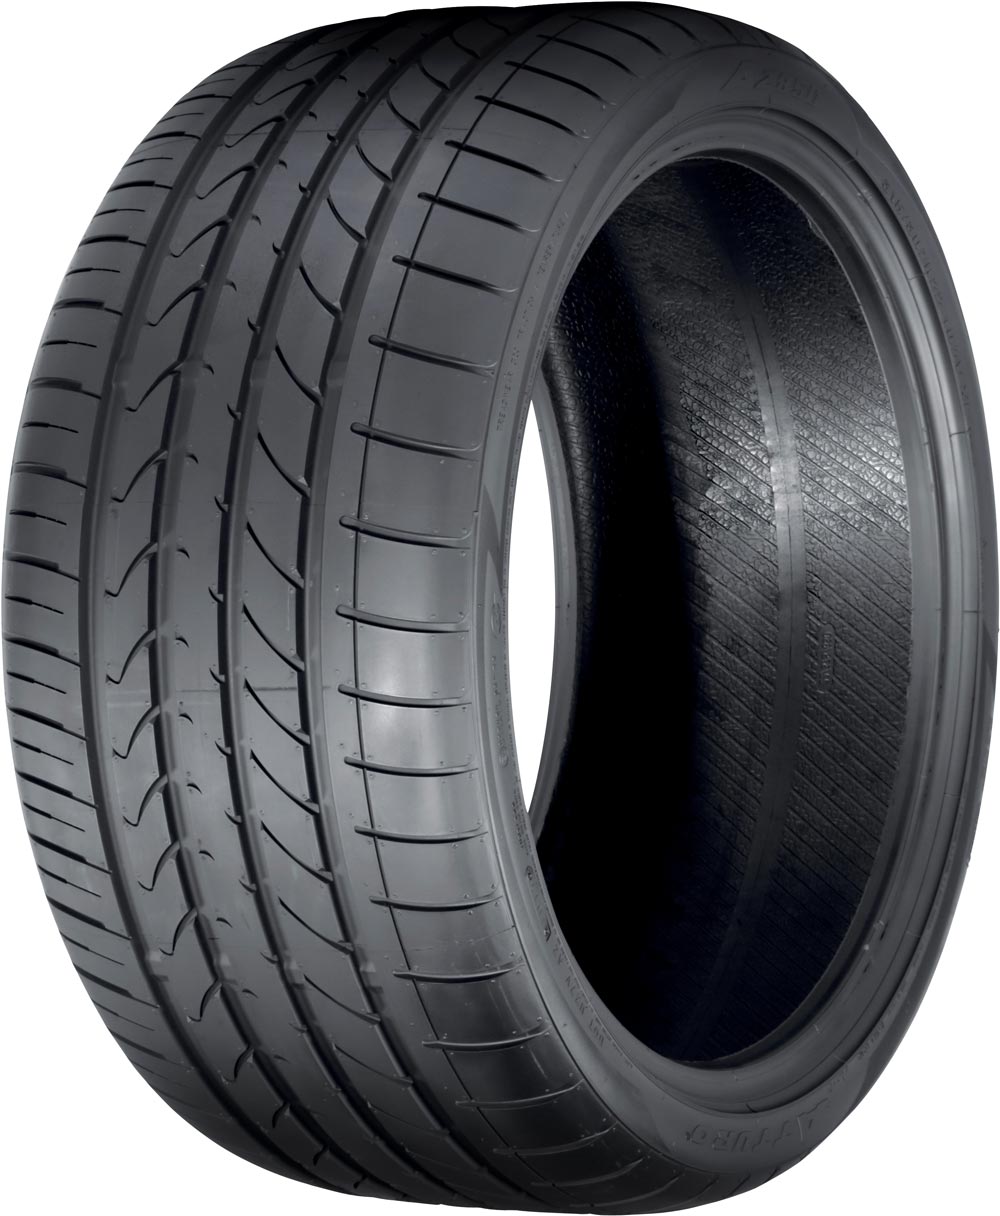 Автомобилни гуми Atturo AZ-850 XL 245/50 R18 104Y